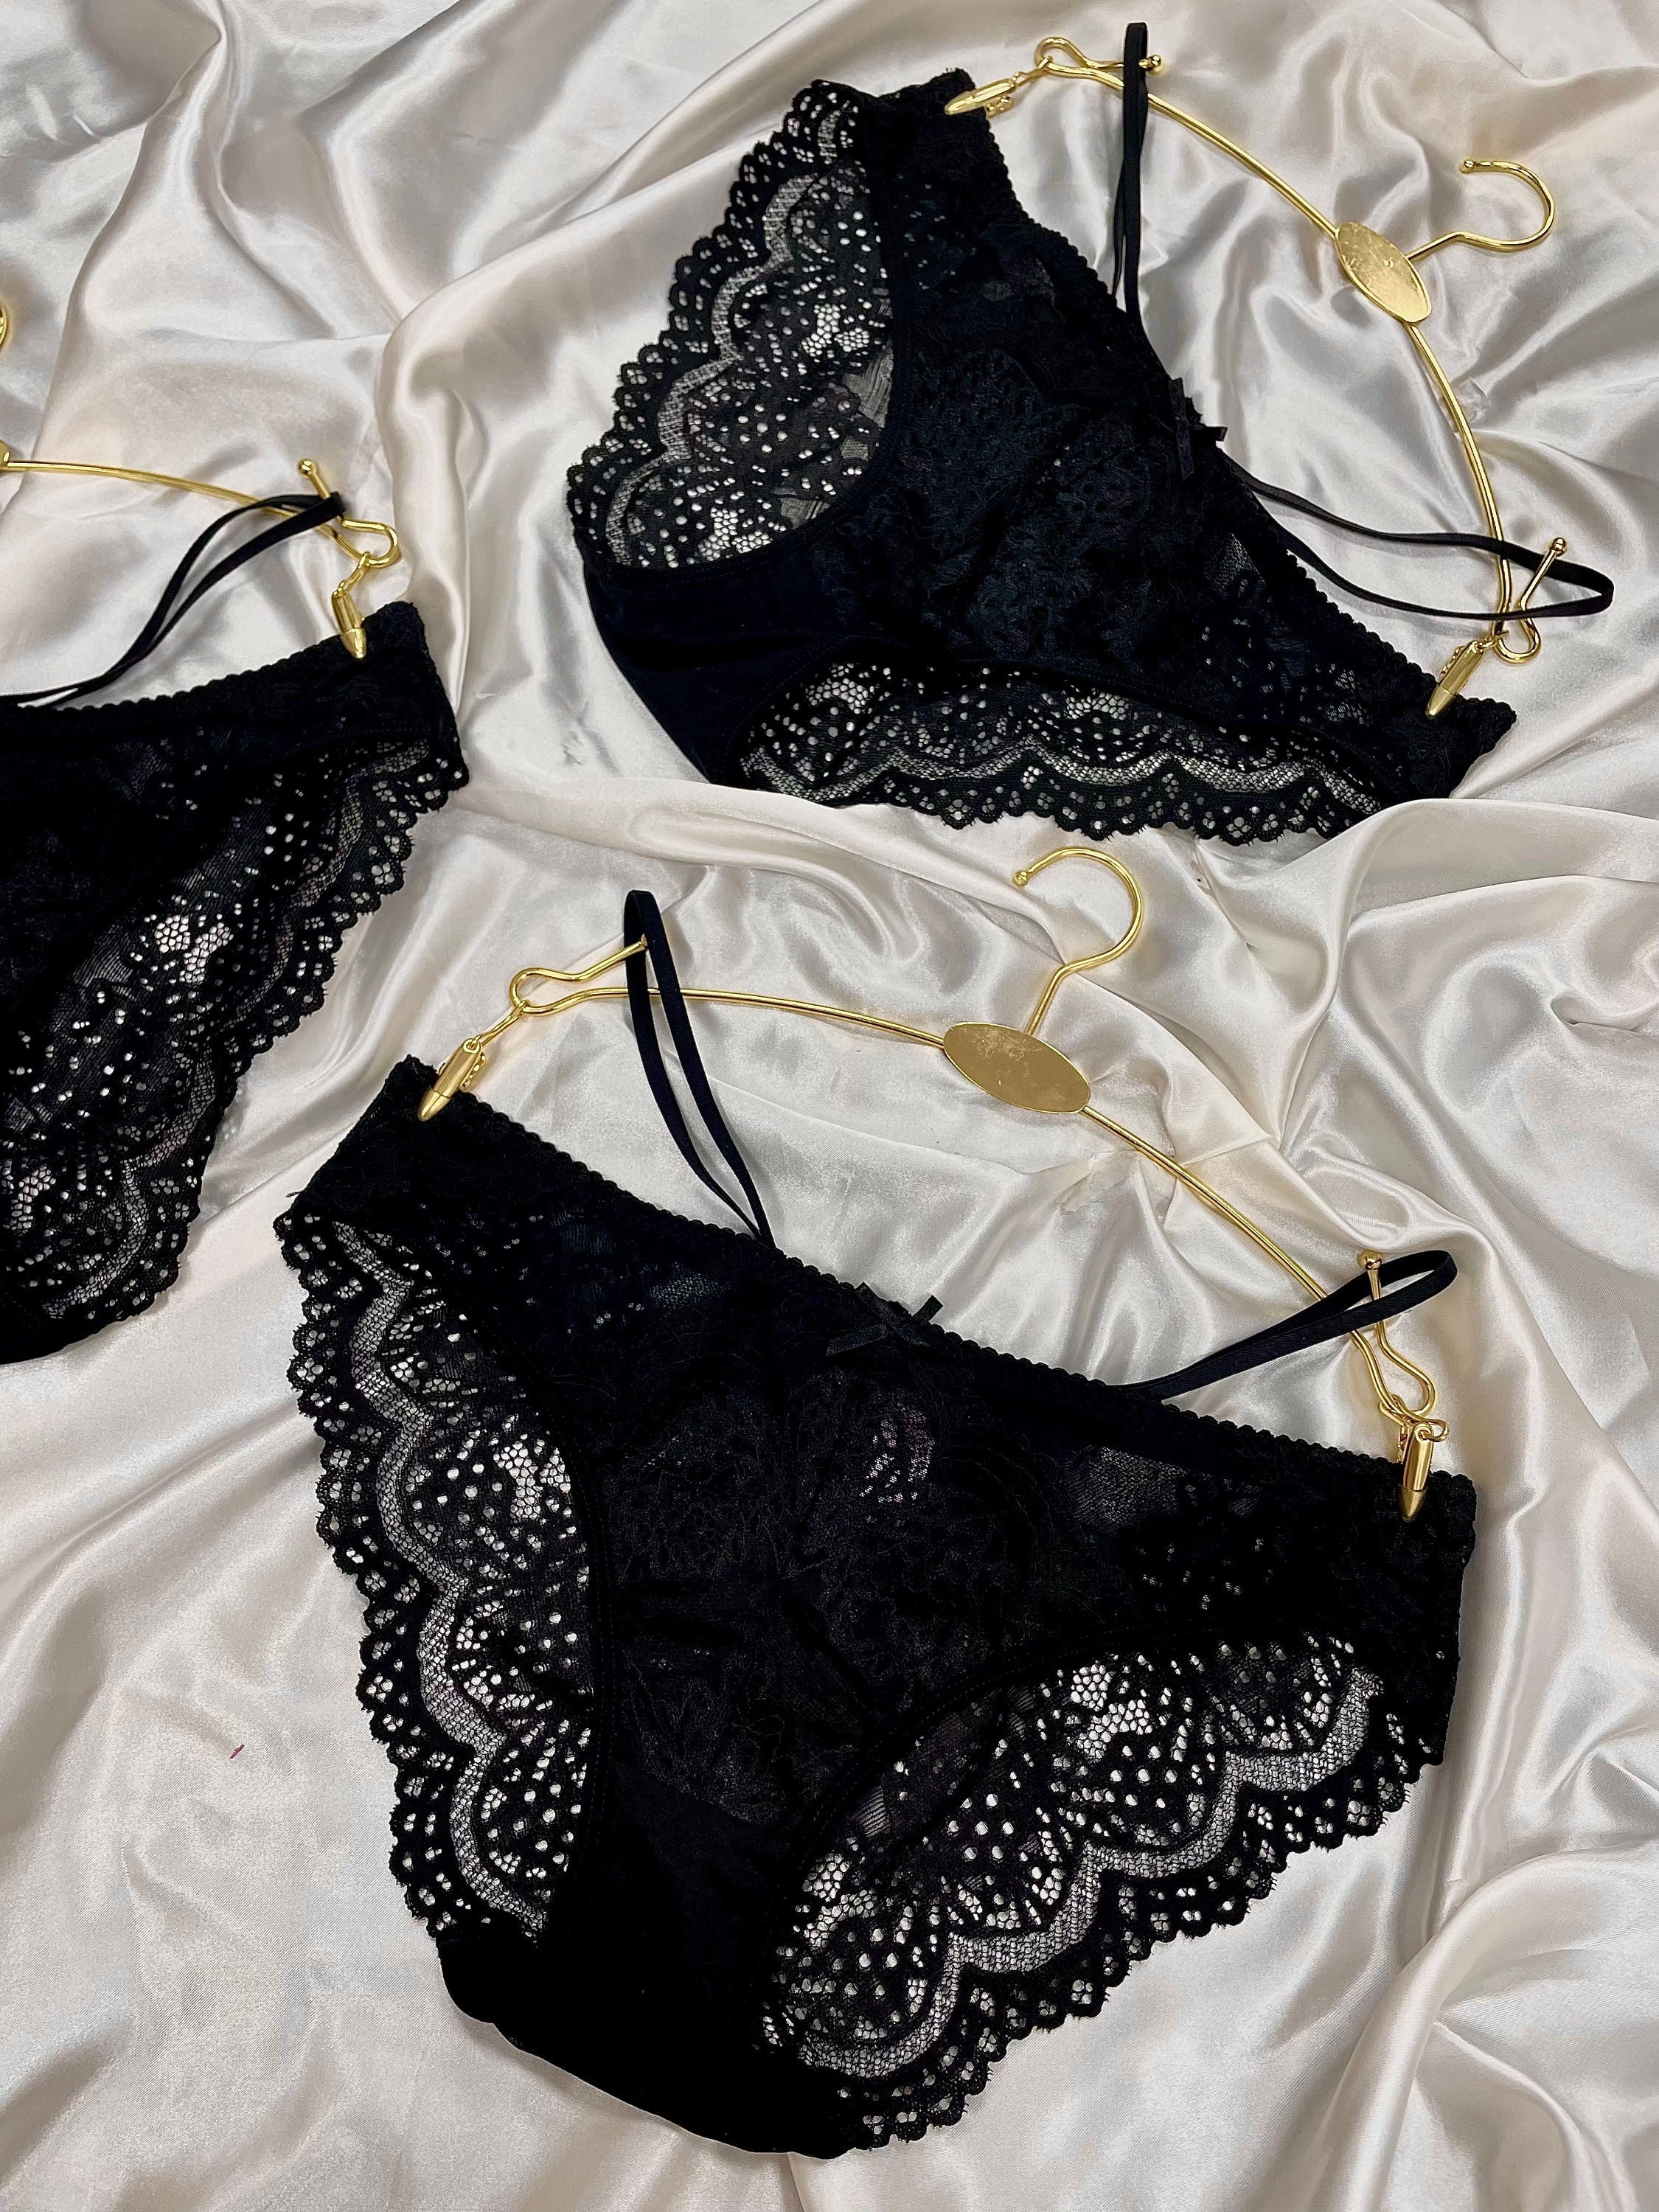 Best of Black lace panties tumblr